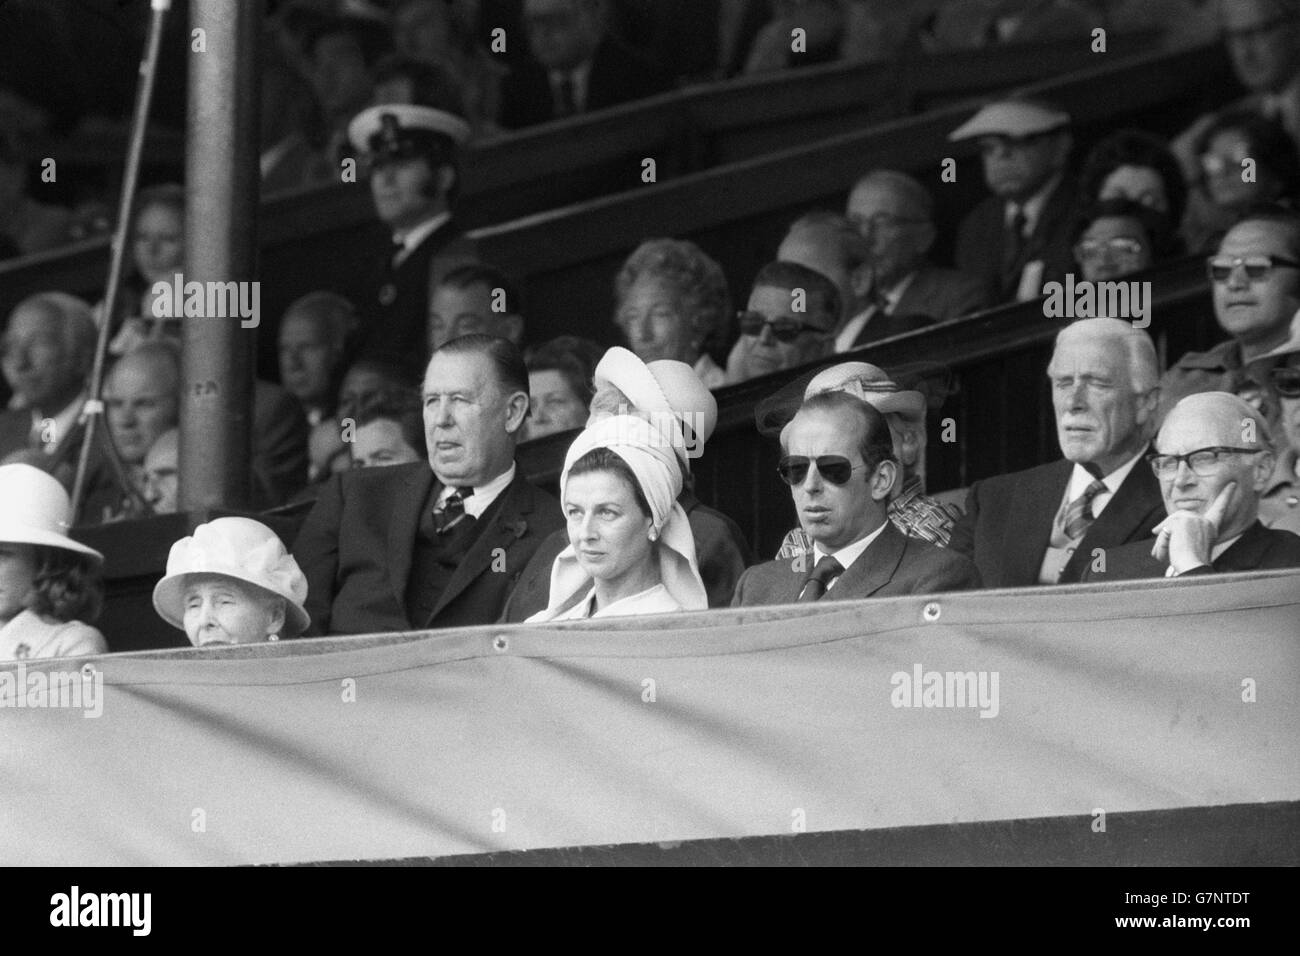 Tennis - Wimbledon - Men's Singles Final - Jimmy Connors / Arthur Ashe - Centre Court. La principessa Alexandra di Kent e il principe Edward, duca di Kent (occhiali scuri) partecipano alla finale del singolo maschile di Wimbledon. Foto Stock